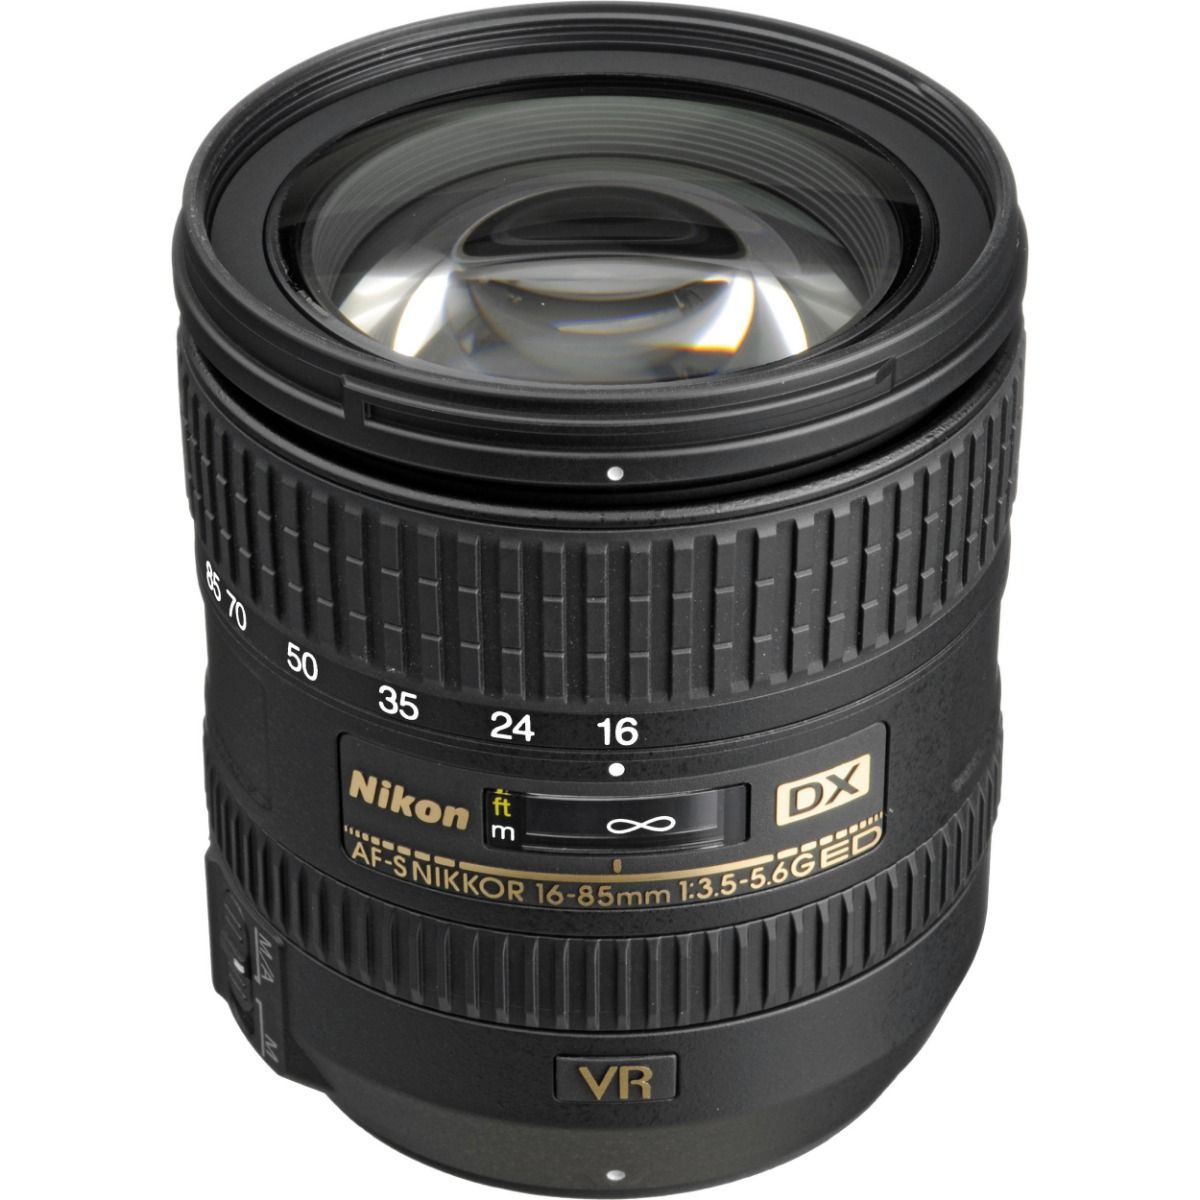 Nikon DX AF-S 16-85mm 3.5-5.6G ED VR - レンズ(ズーム)